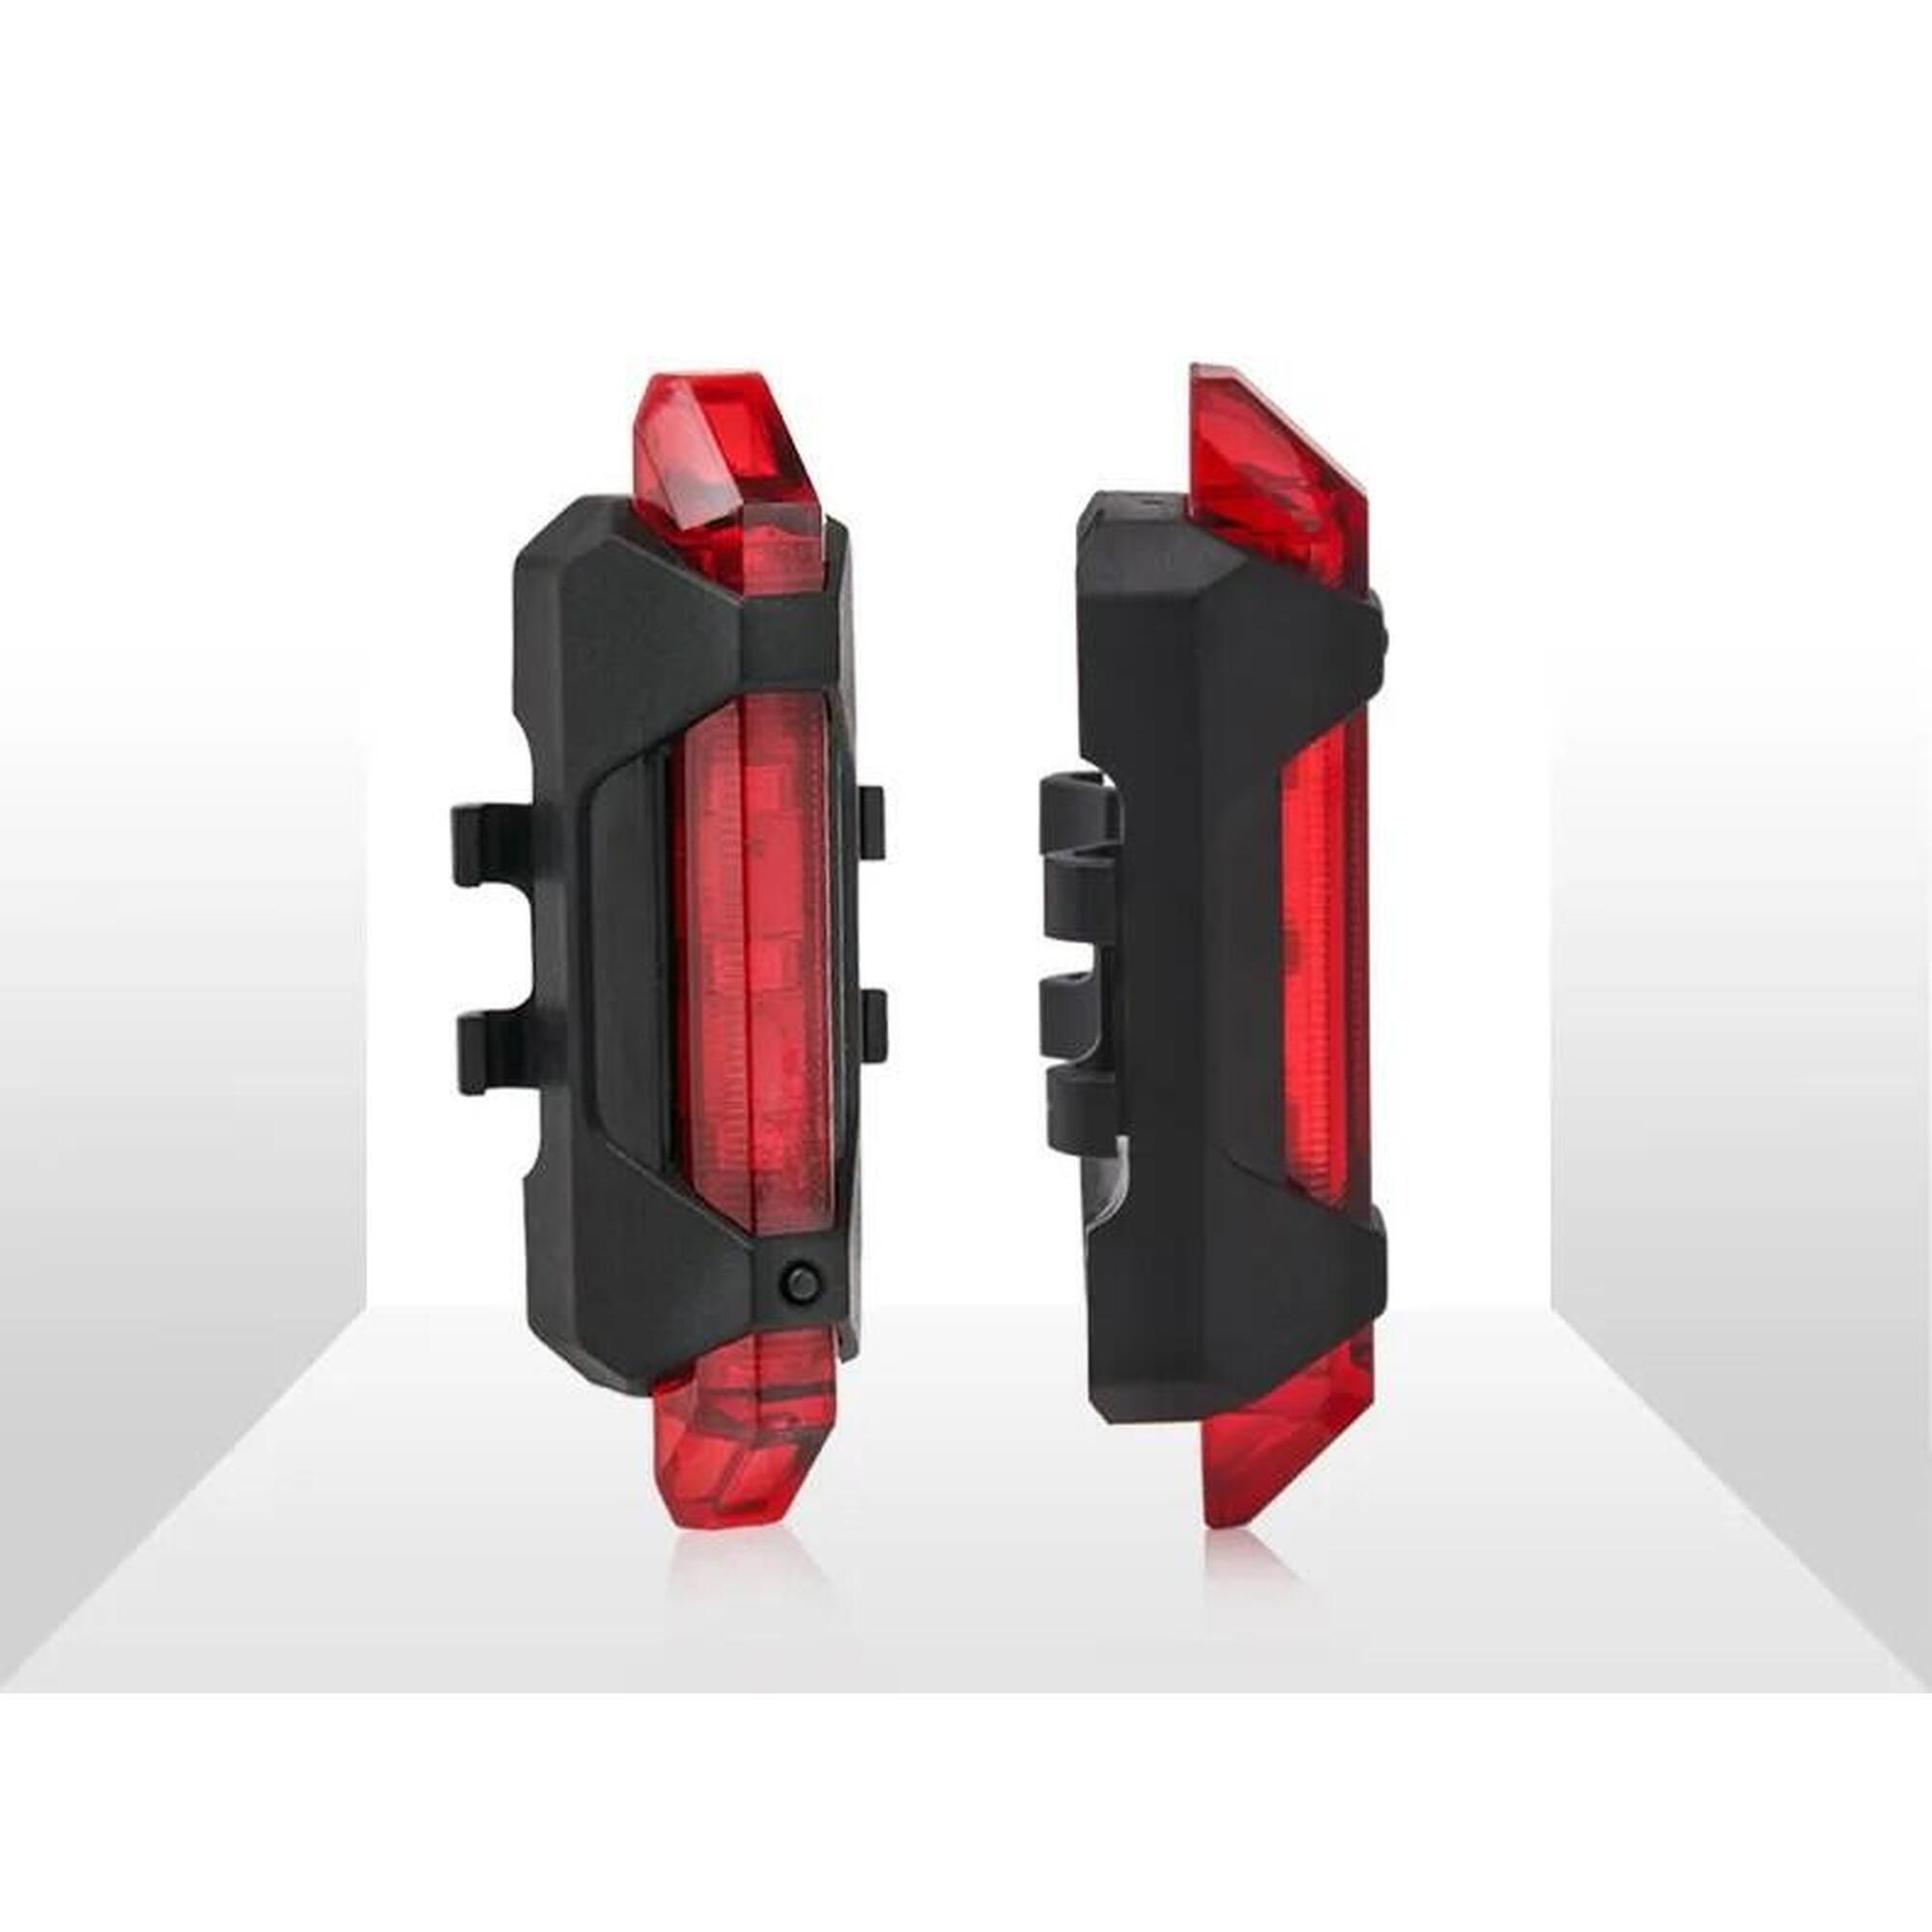 Feu arrière rouge lumineux pour bicyclette LED USB rechargeable